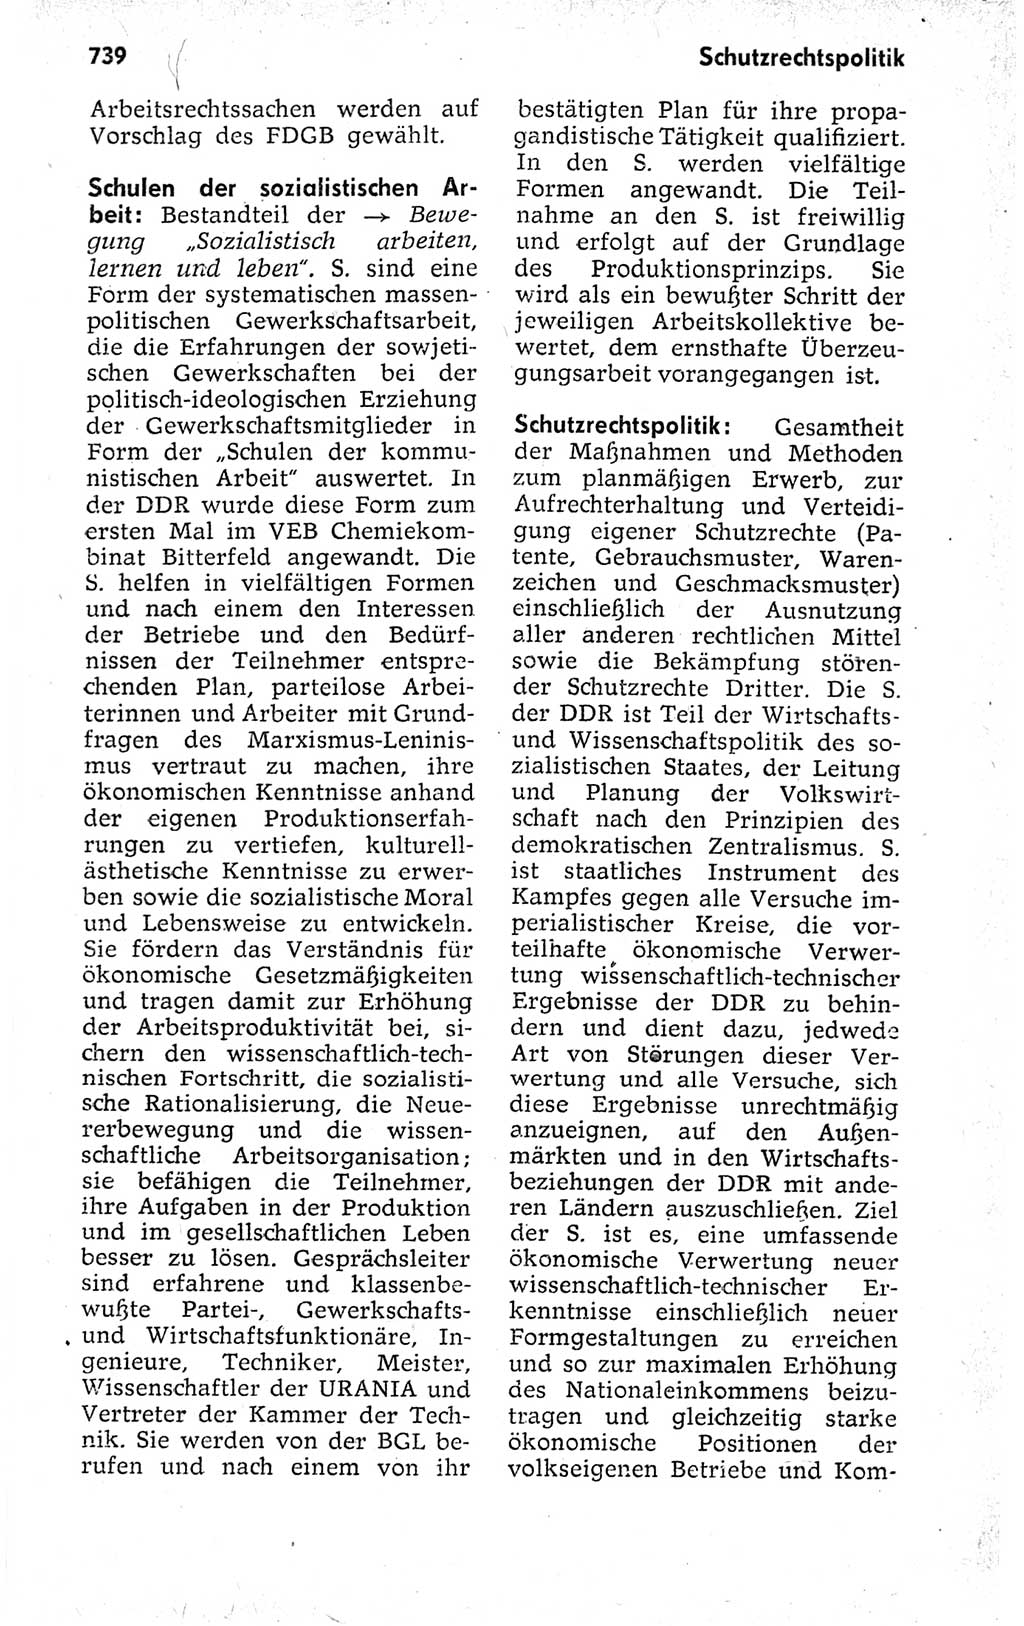 Kleines politisches Wörterbuch [Deutsche Demokratische Republik (DDR)] 1973, Seite 739 (Kl. pol. Wb. DDR 1973, S. 739)